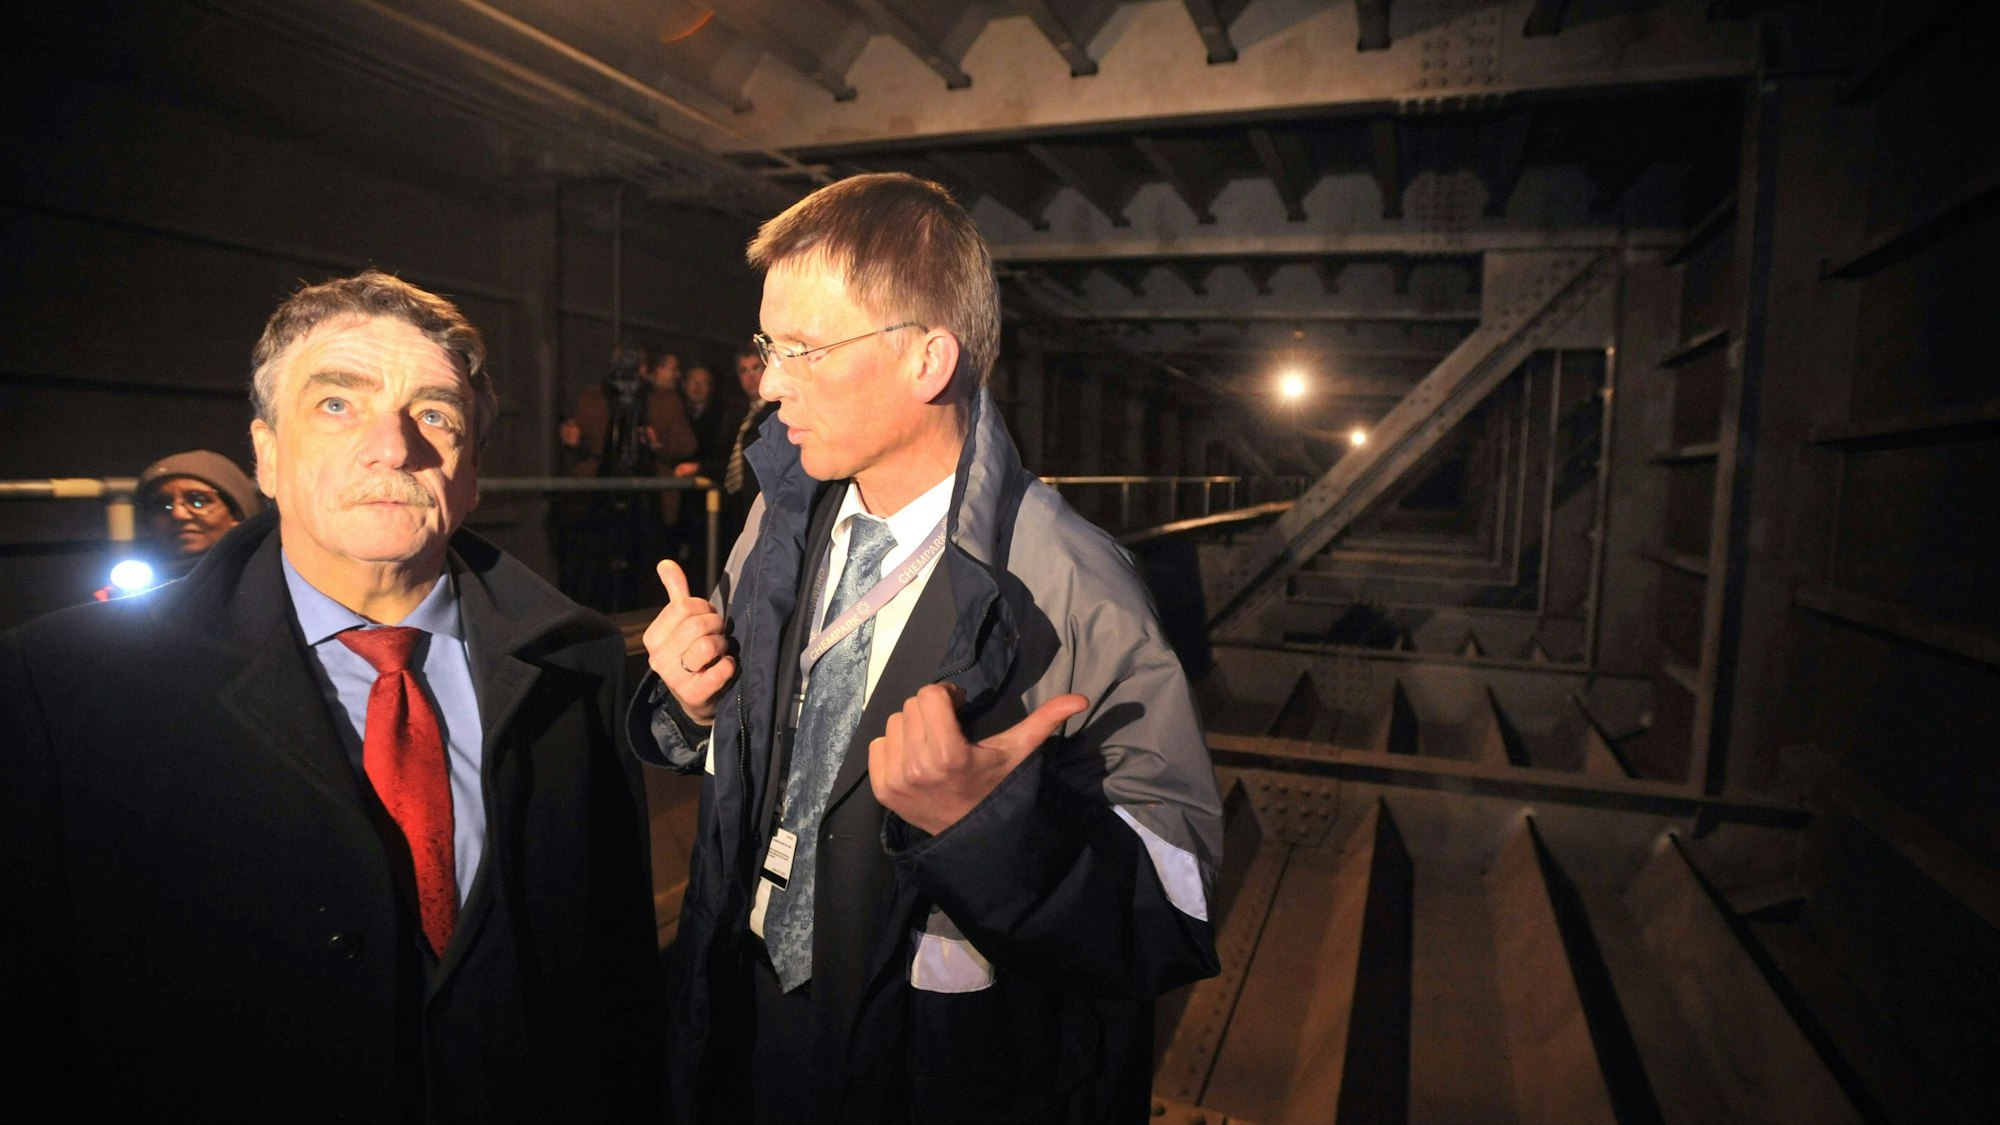 NRW-Verkehrsminister Groschek und Ernst Grigat, Leiter Chemparks Leverkusen stehen im Brückenkasten der Leverkusener Brücke. Es ist eine dunkle Stahlkonstruktion. Im Hintergrund leuchtet jemand mit einer Taschenlampe.